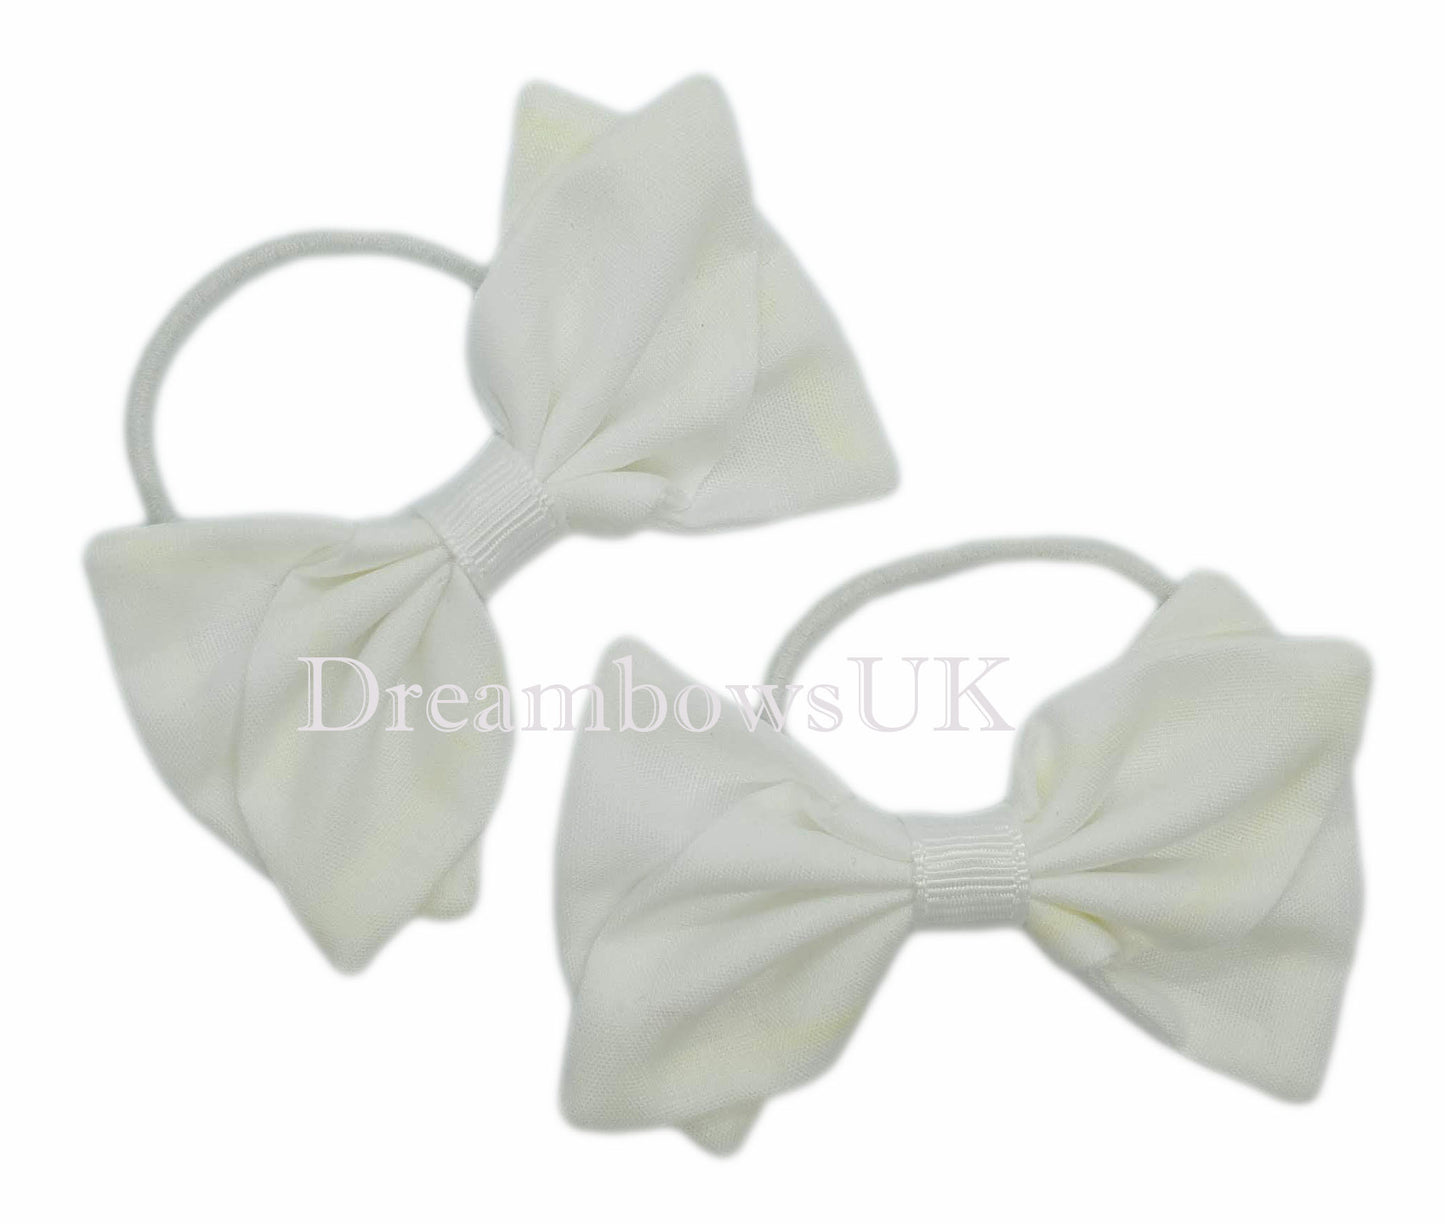 White fabric hair bows on thin hair ties